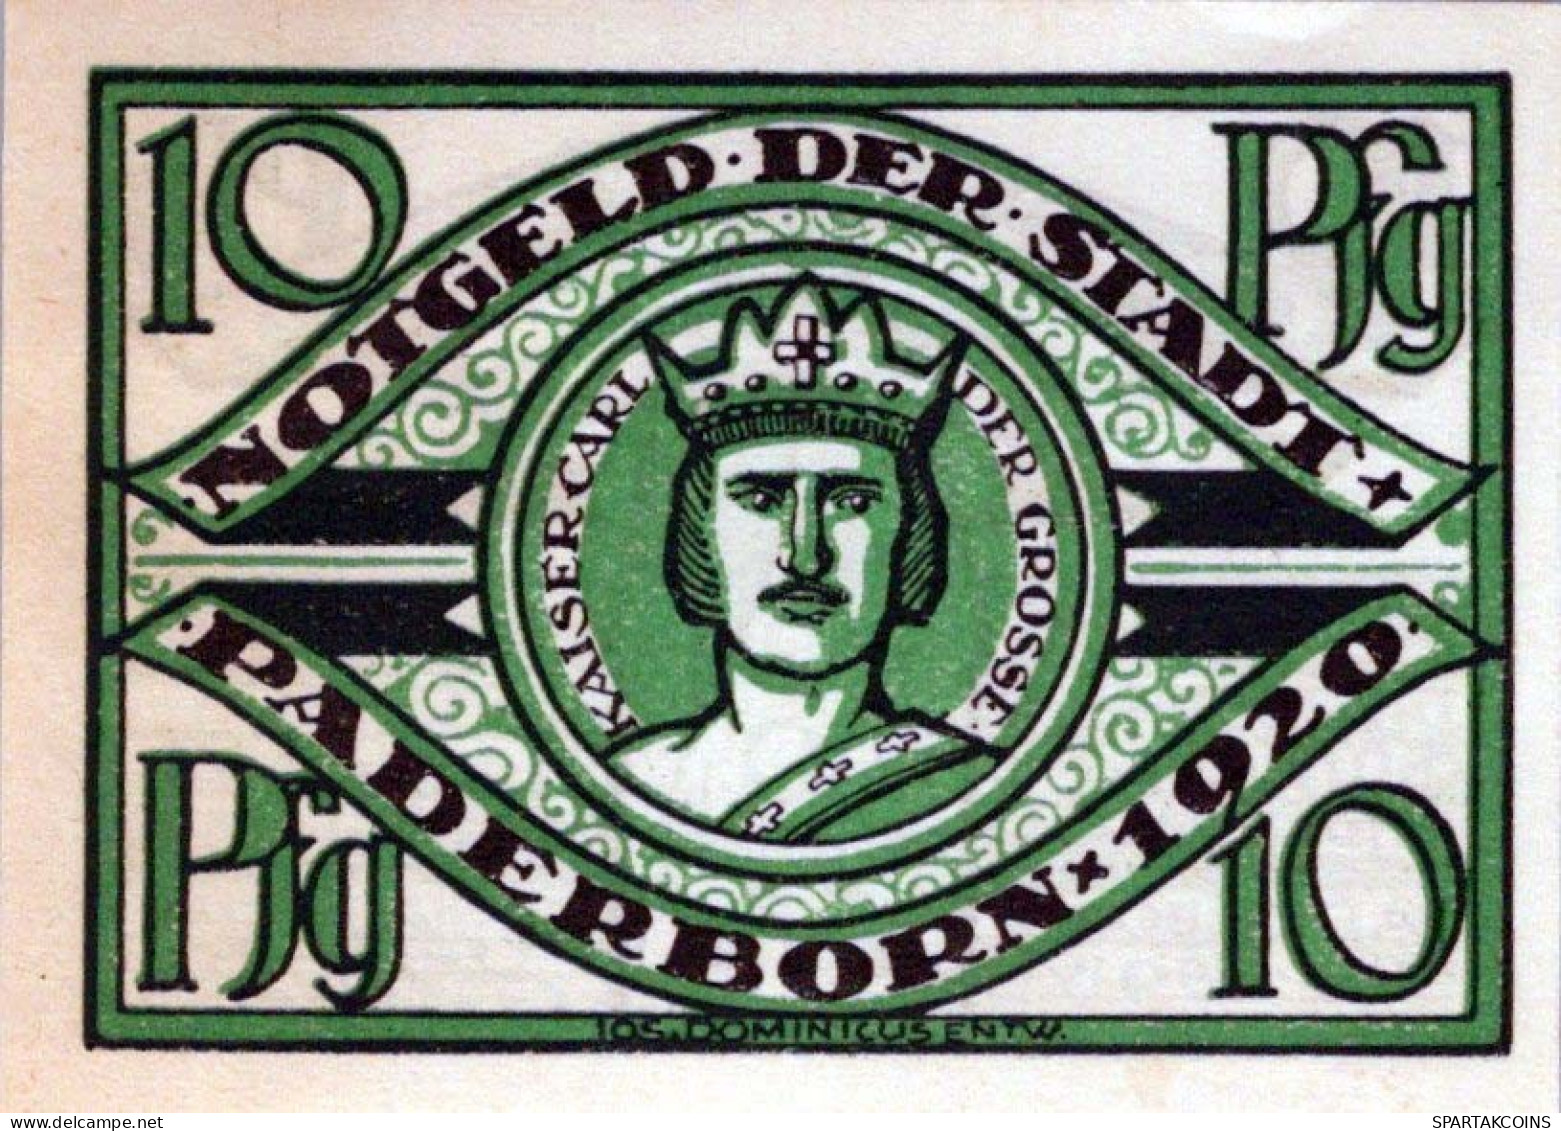 10 PFENNIG 1920 Stadt PADERBORN Westphalia DEUTSCHLAND Notgeld Banknote #PF887 - [11] Local Banknote Issues